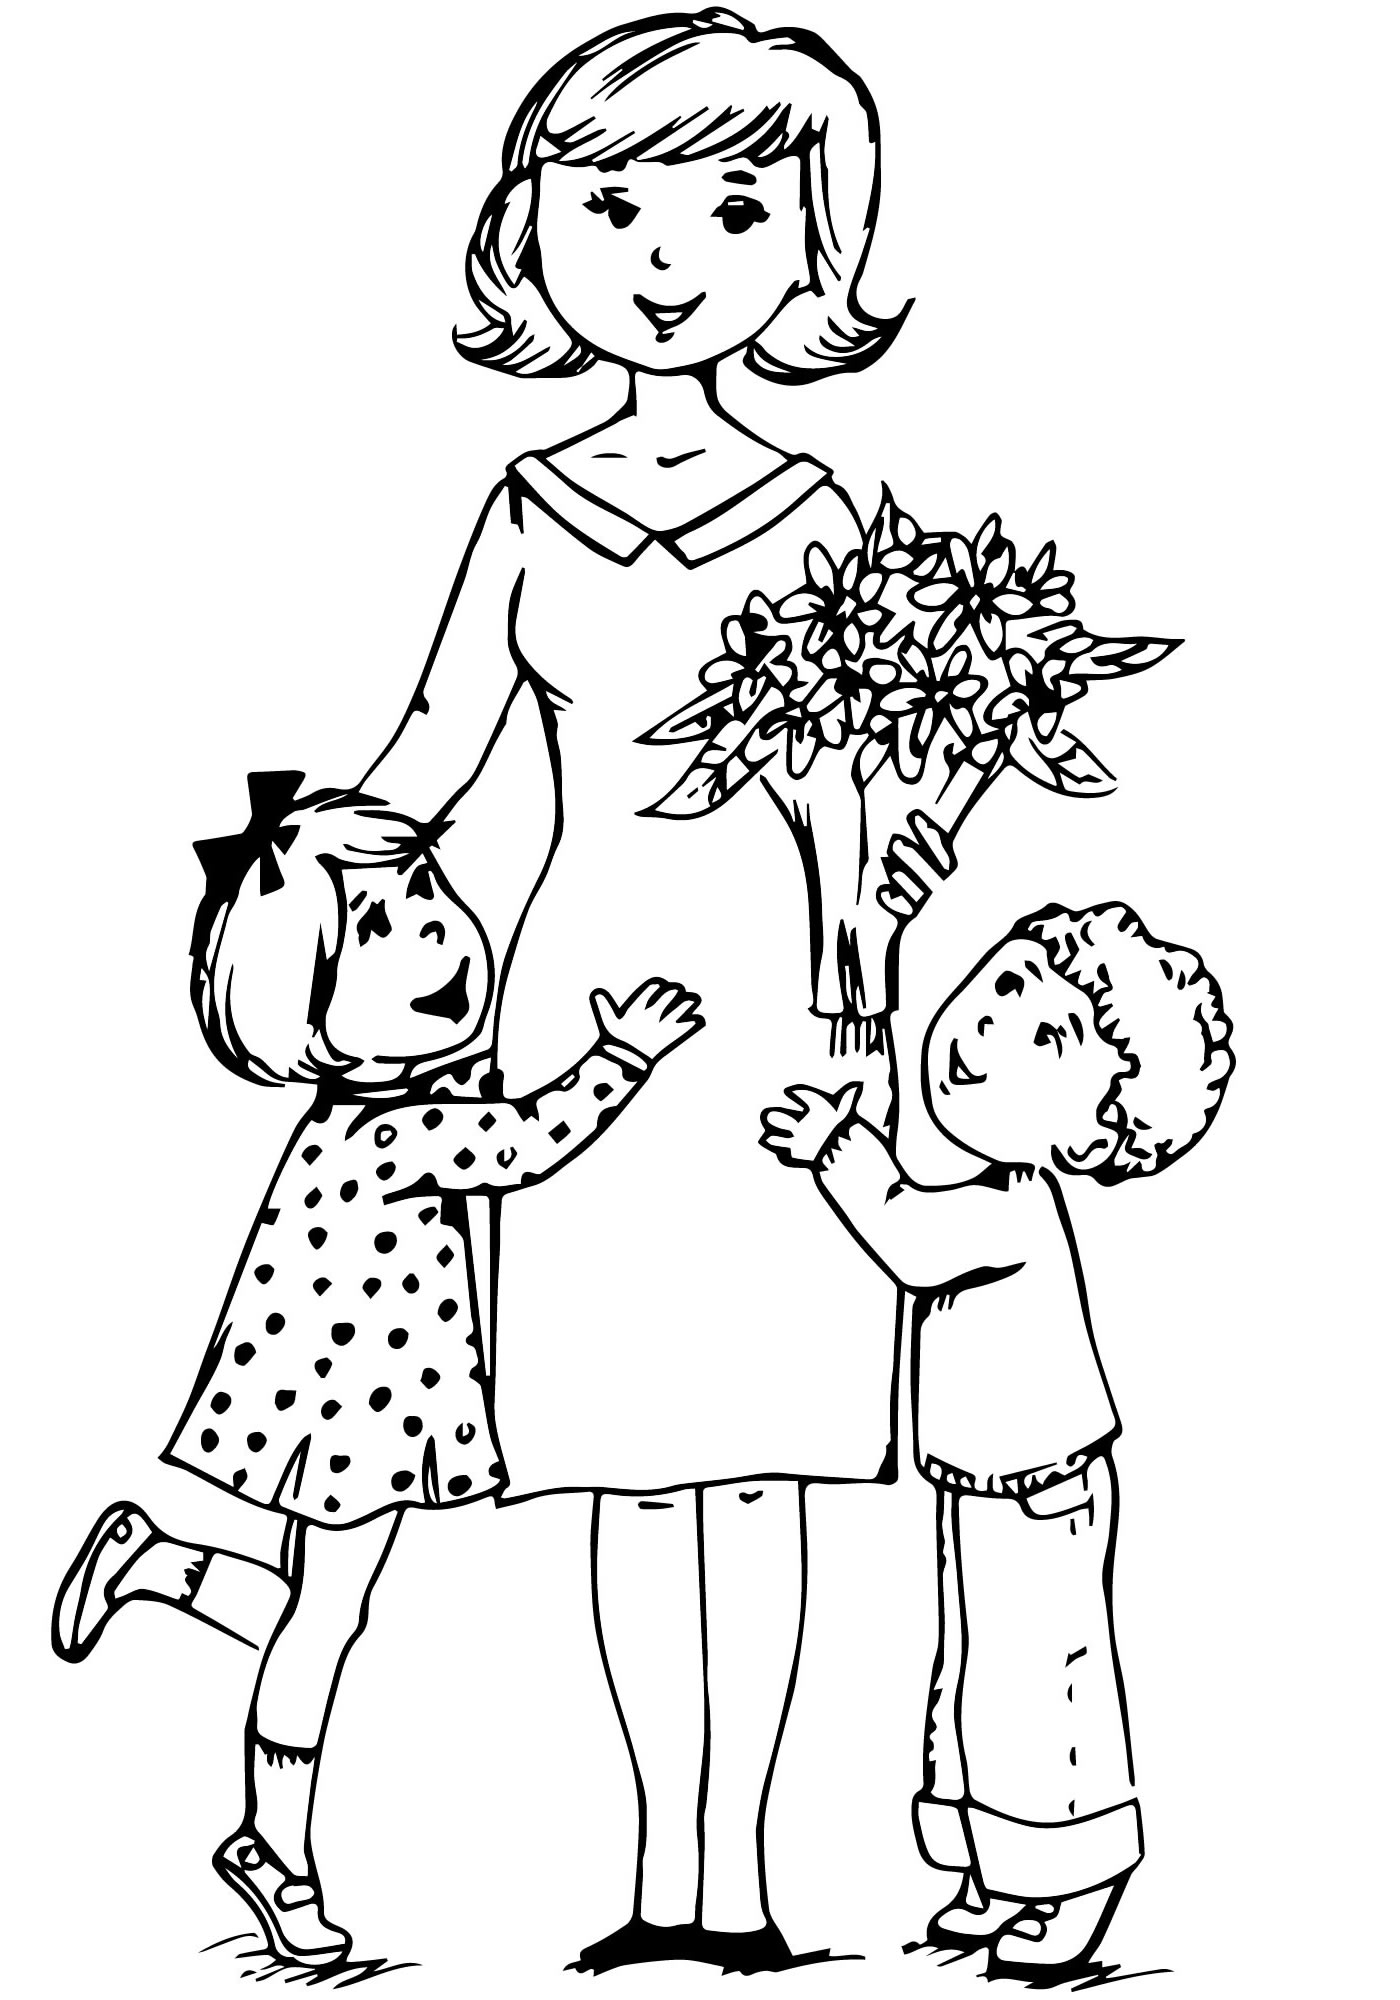 Публикация «Победа в конкурсе рисунков „Раскраска для мамы 2013“,» размещена в разделах